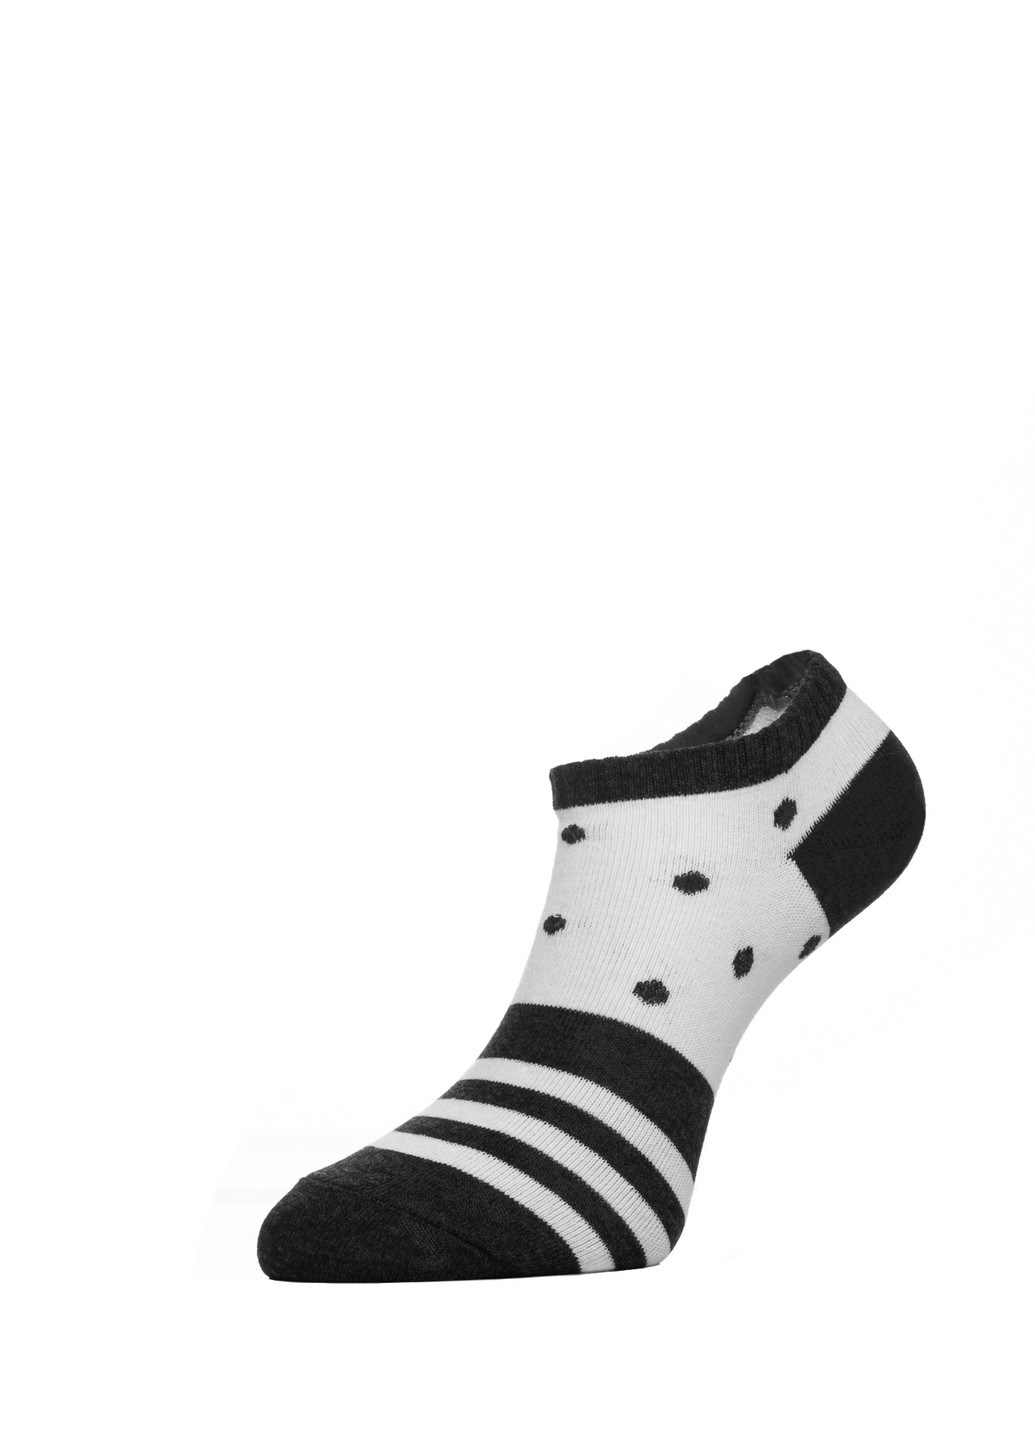 Шкарпетки жін. арт., р.25, 408 сірий-білий-чорний CHOBOT 50s-68 (225542664)